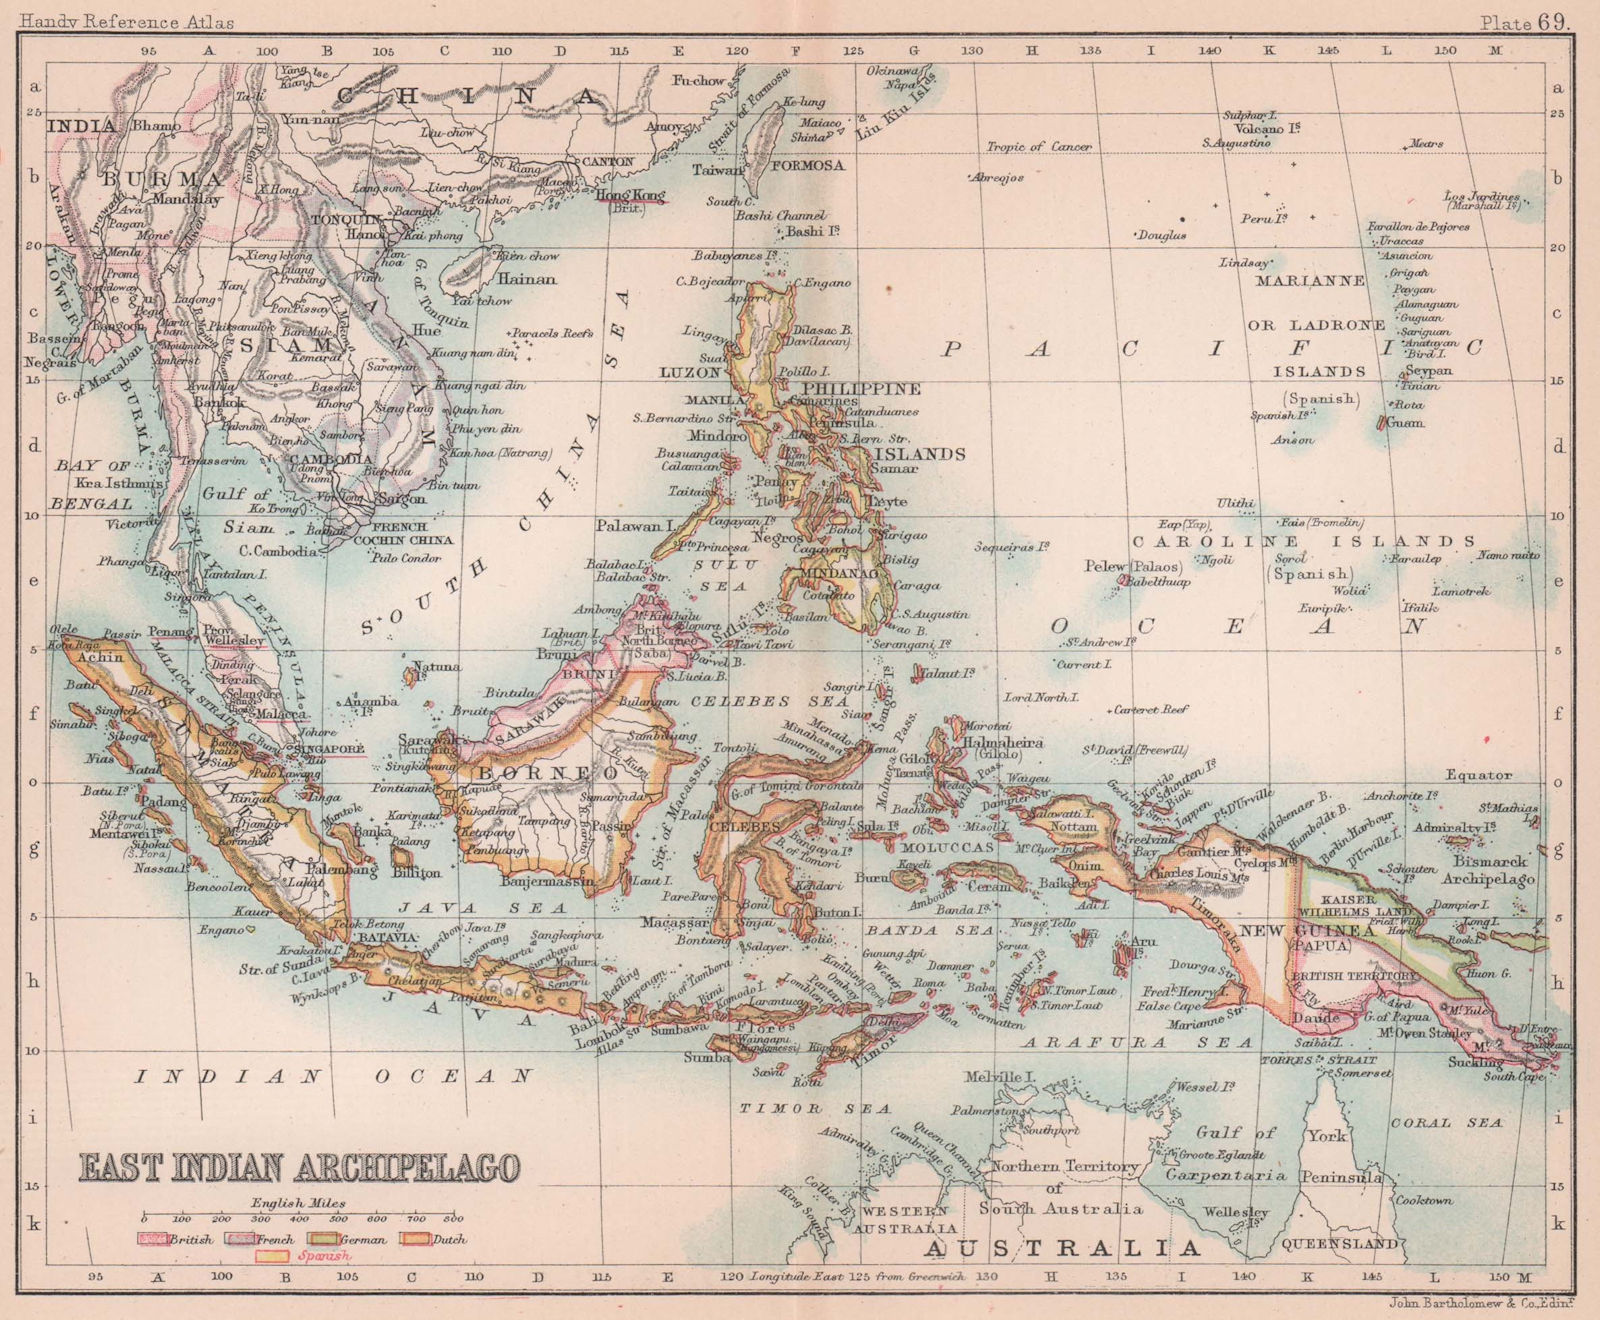 East Indian Archipelago. Indonesia Philippines & Indochina. BARTHOLOMEW 1893 map